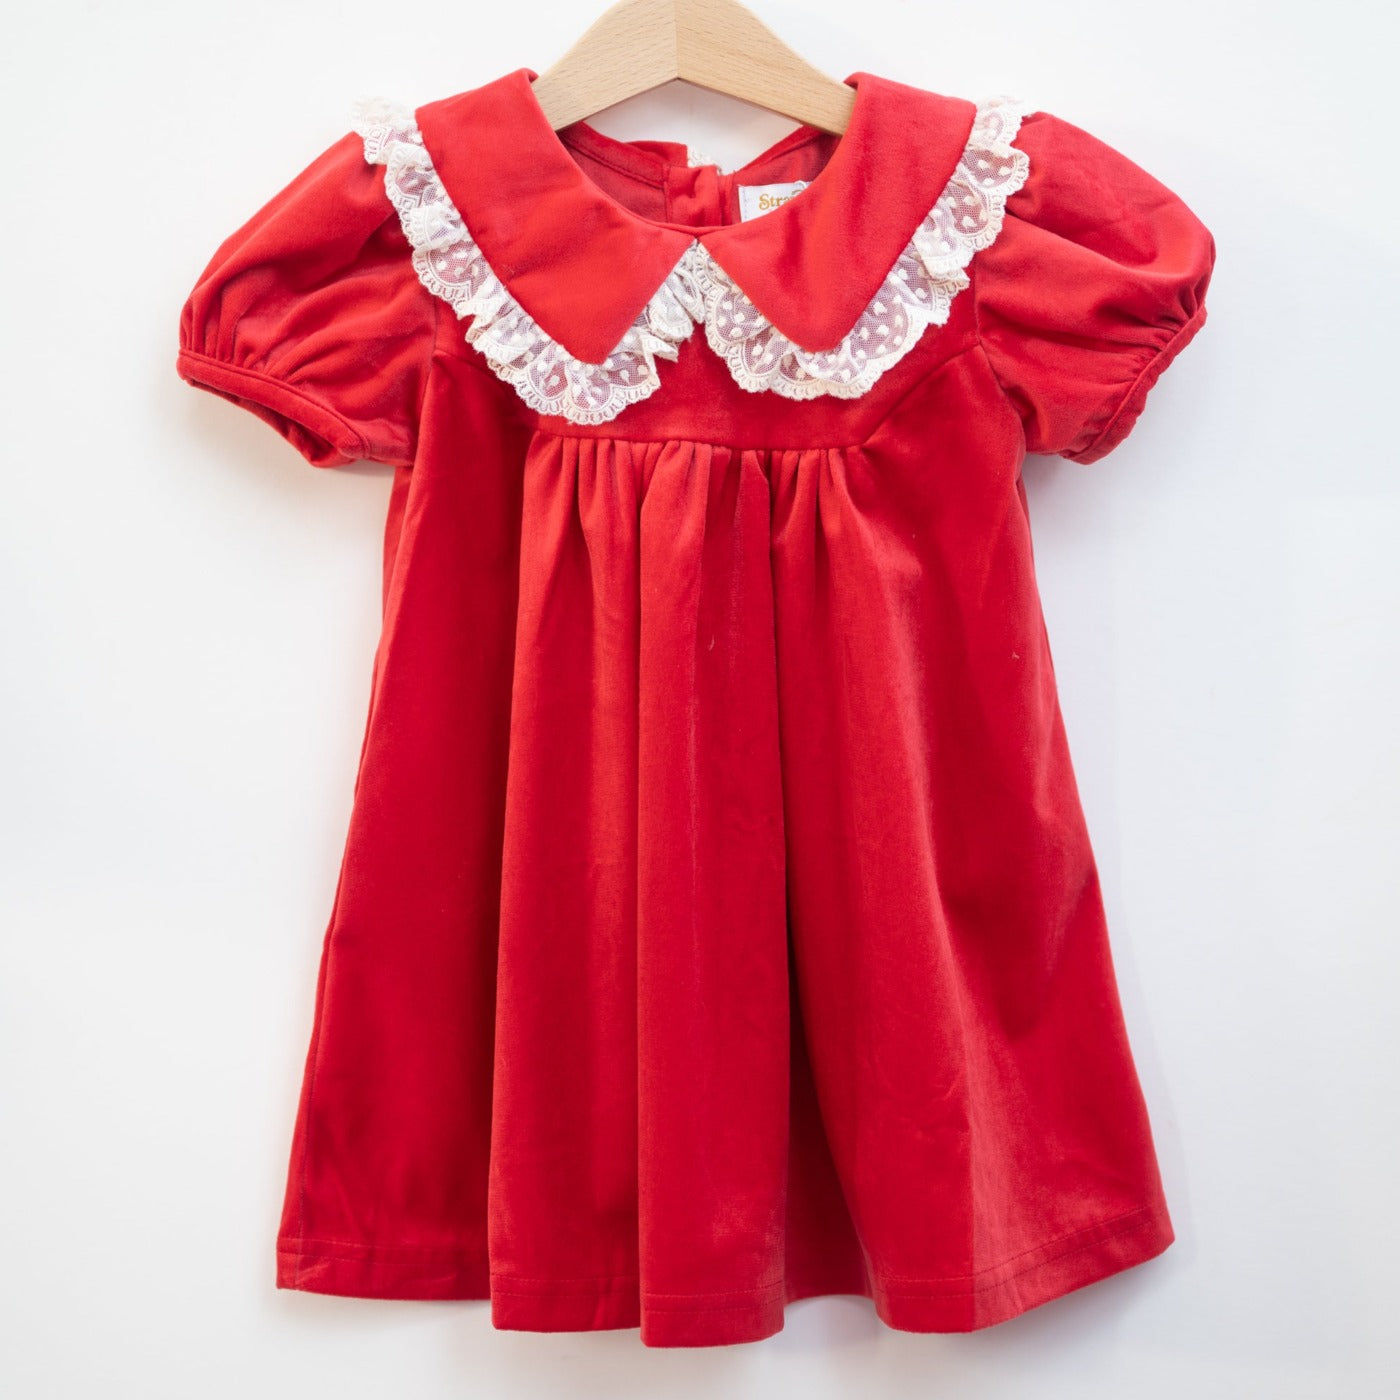 Red Velvet Collar Dress for Baby and Toddler Girls – Strawberry Jam Kids